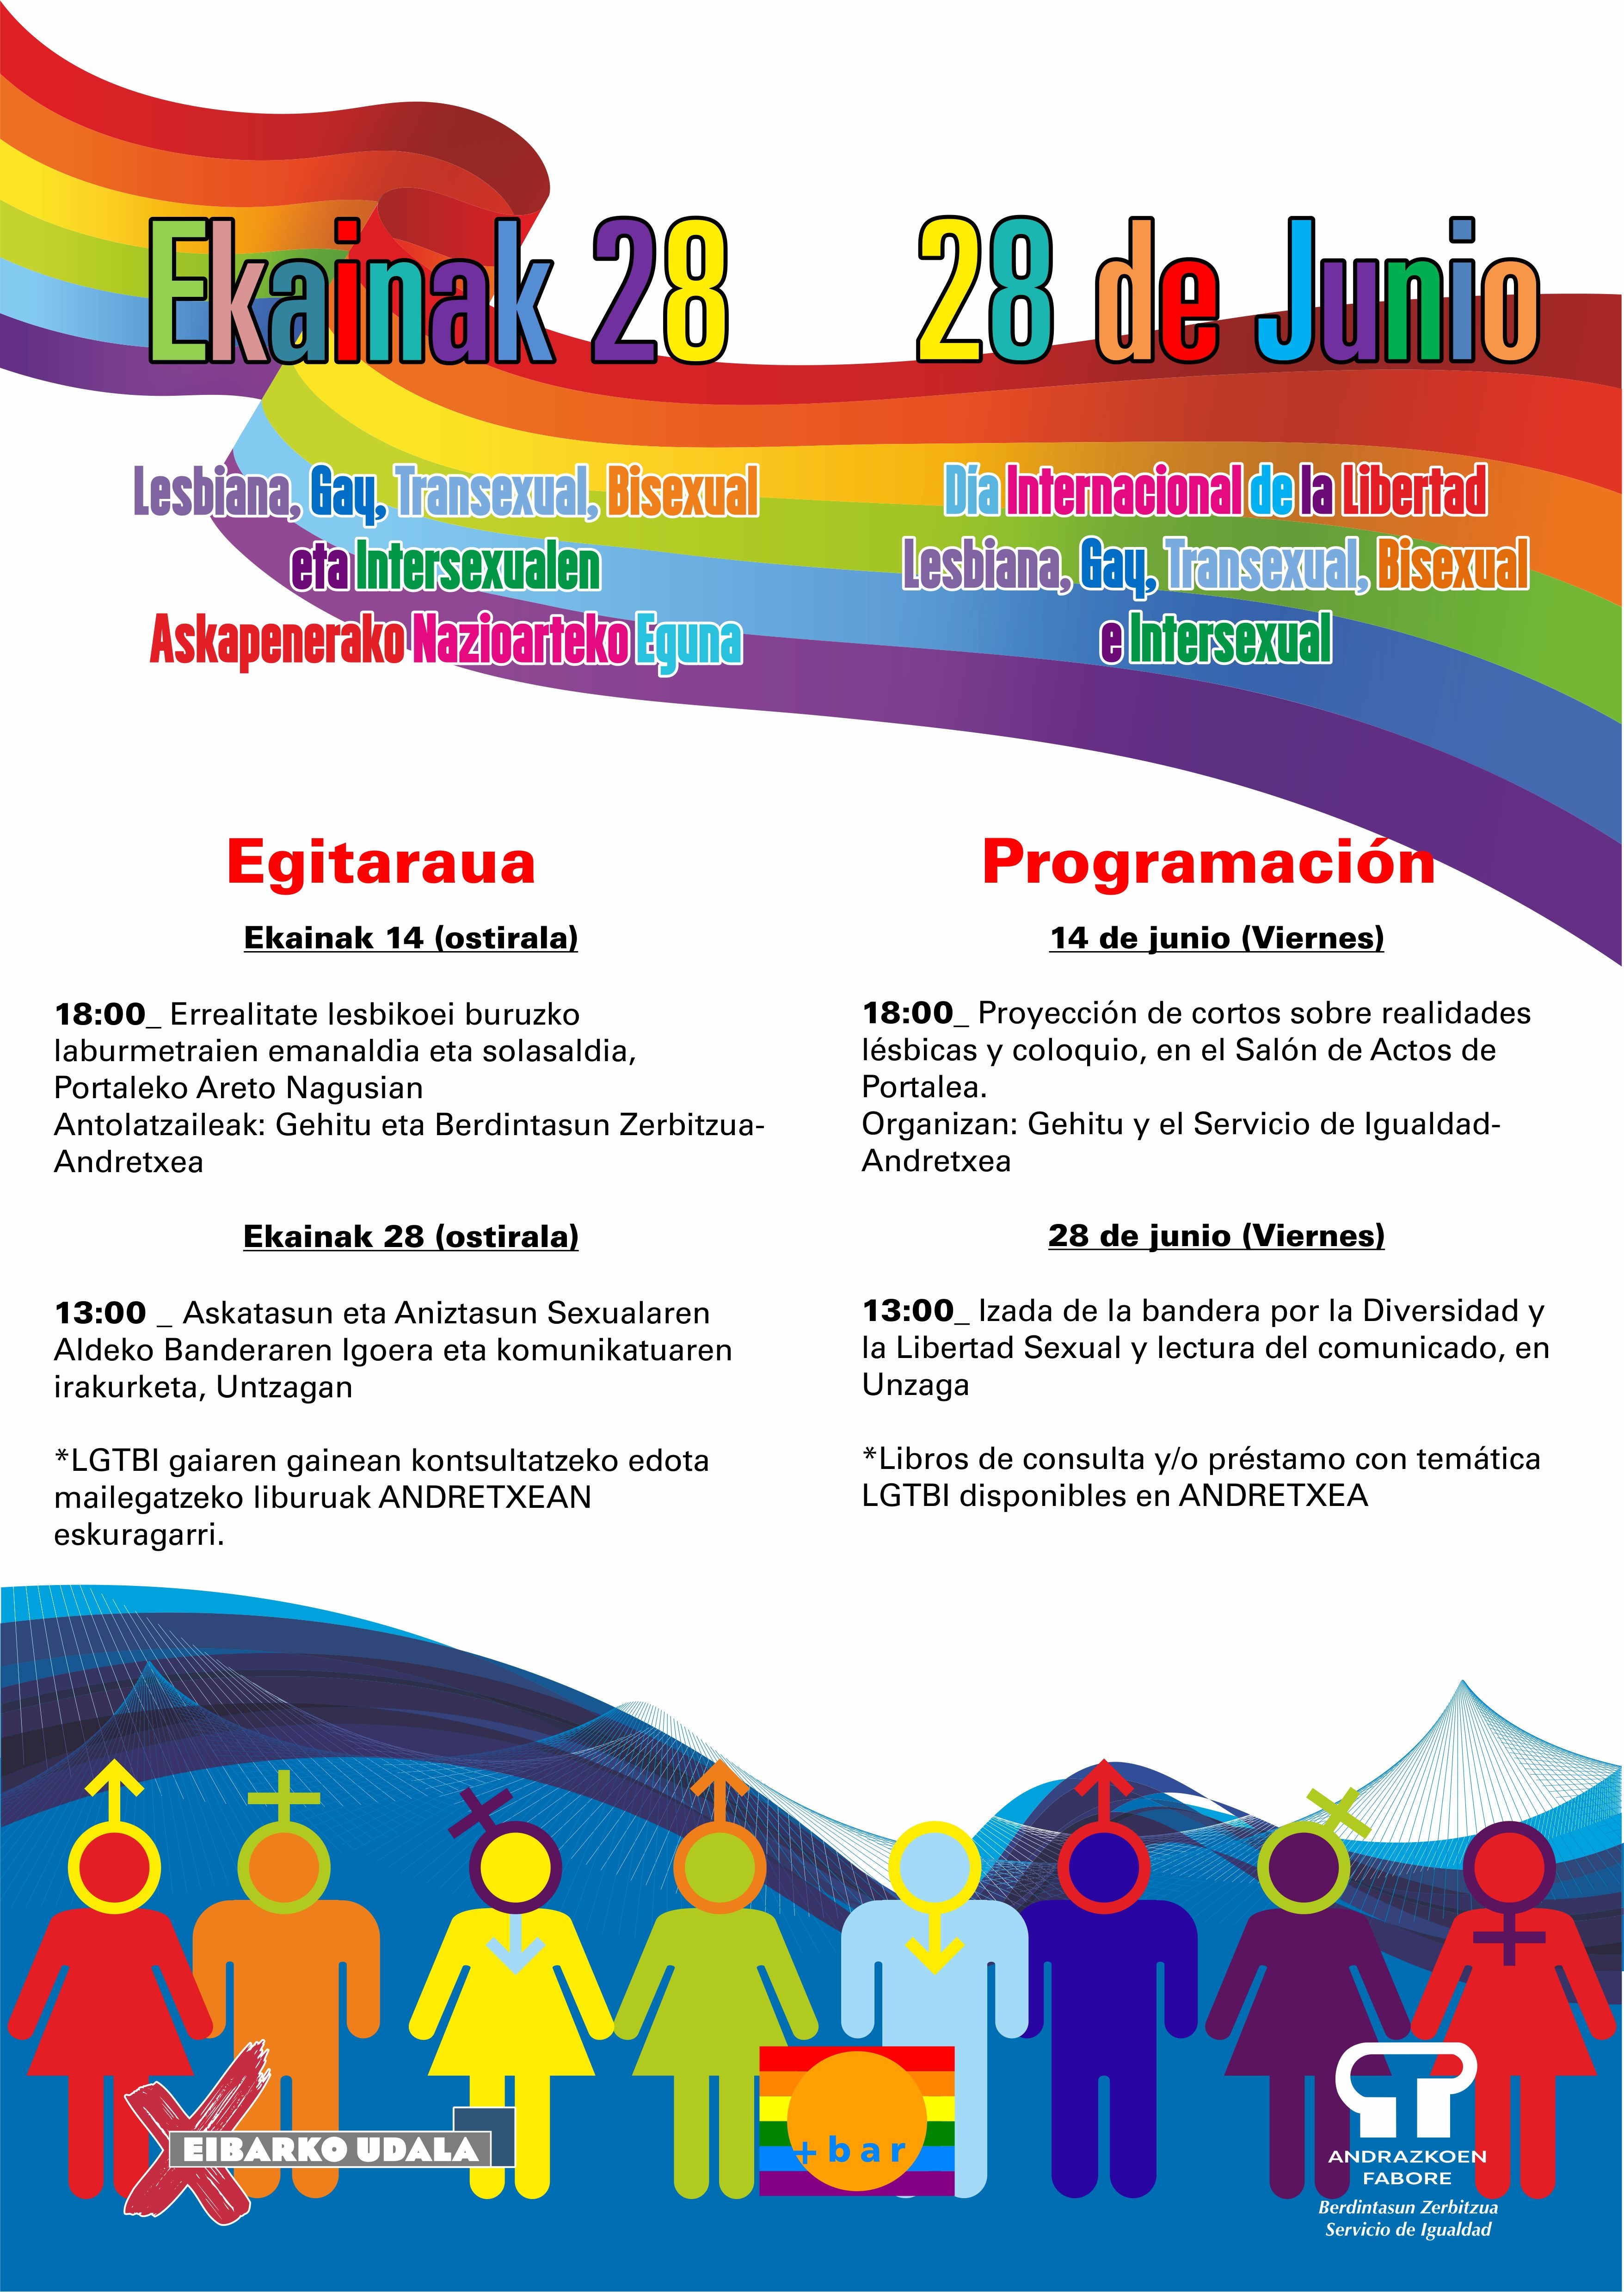 Está disponible la programación de la campaña del Orgullo LGTBI